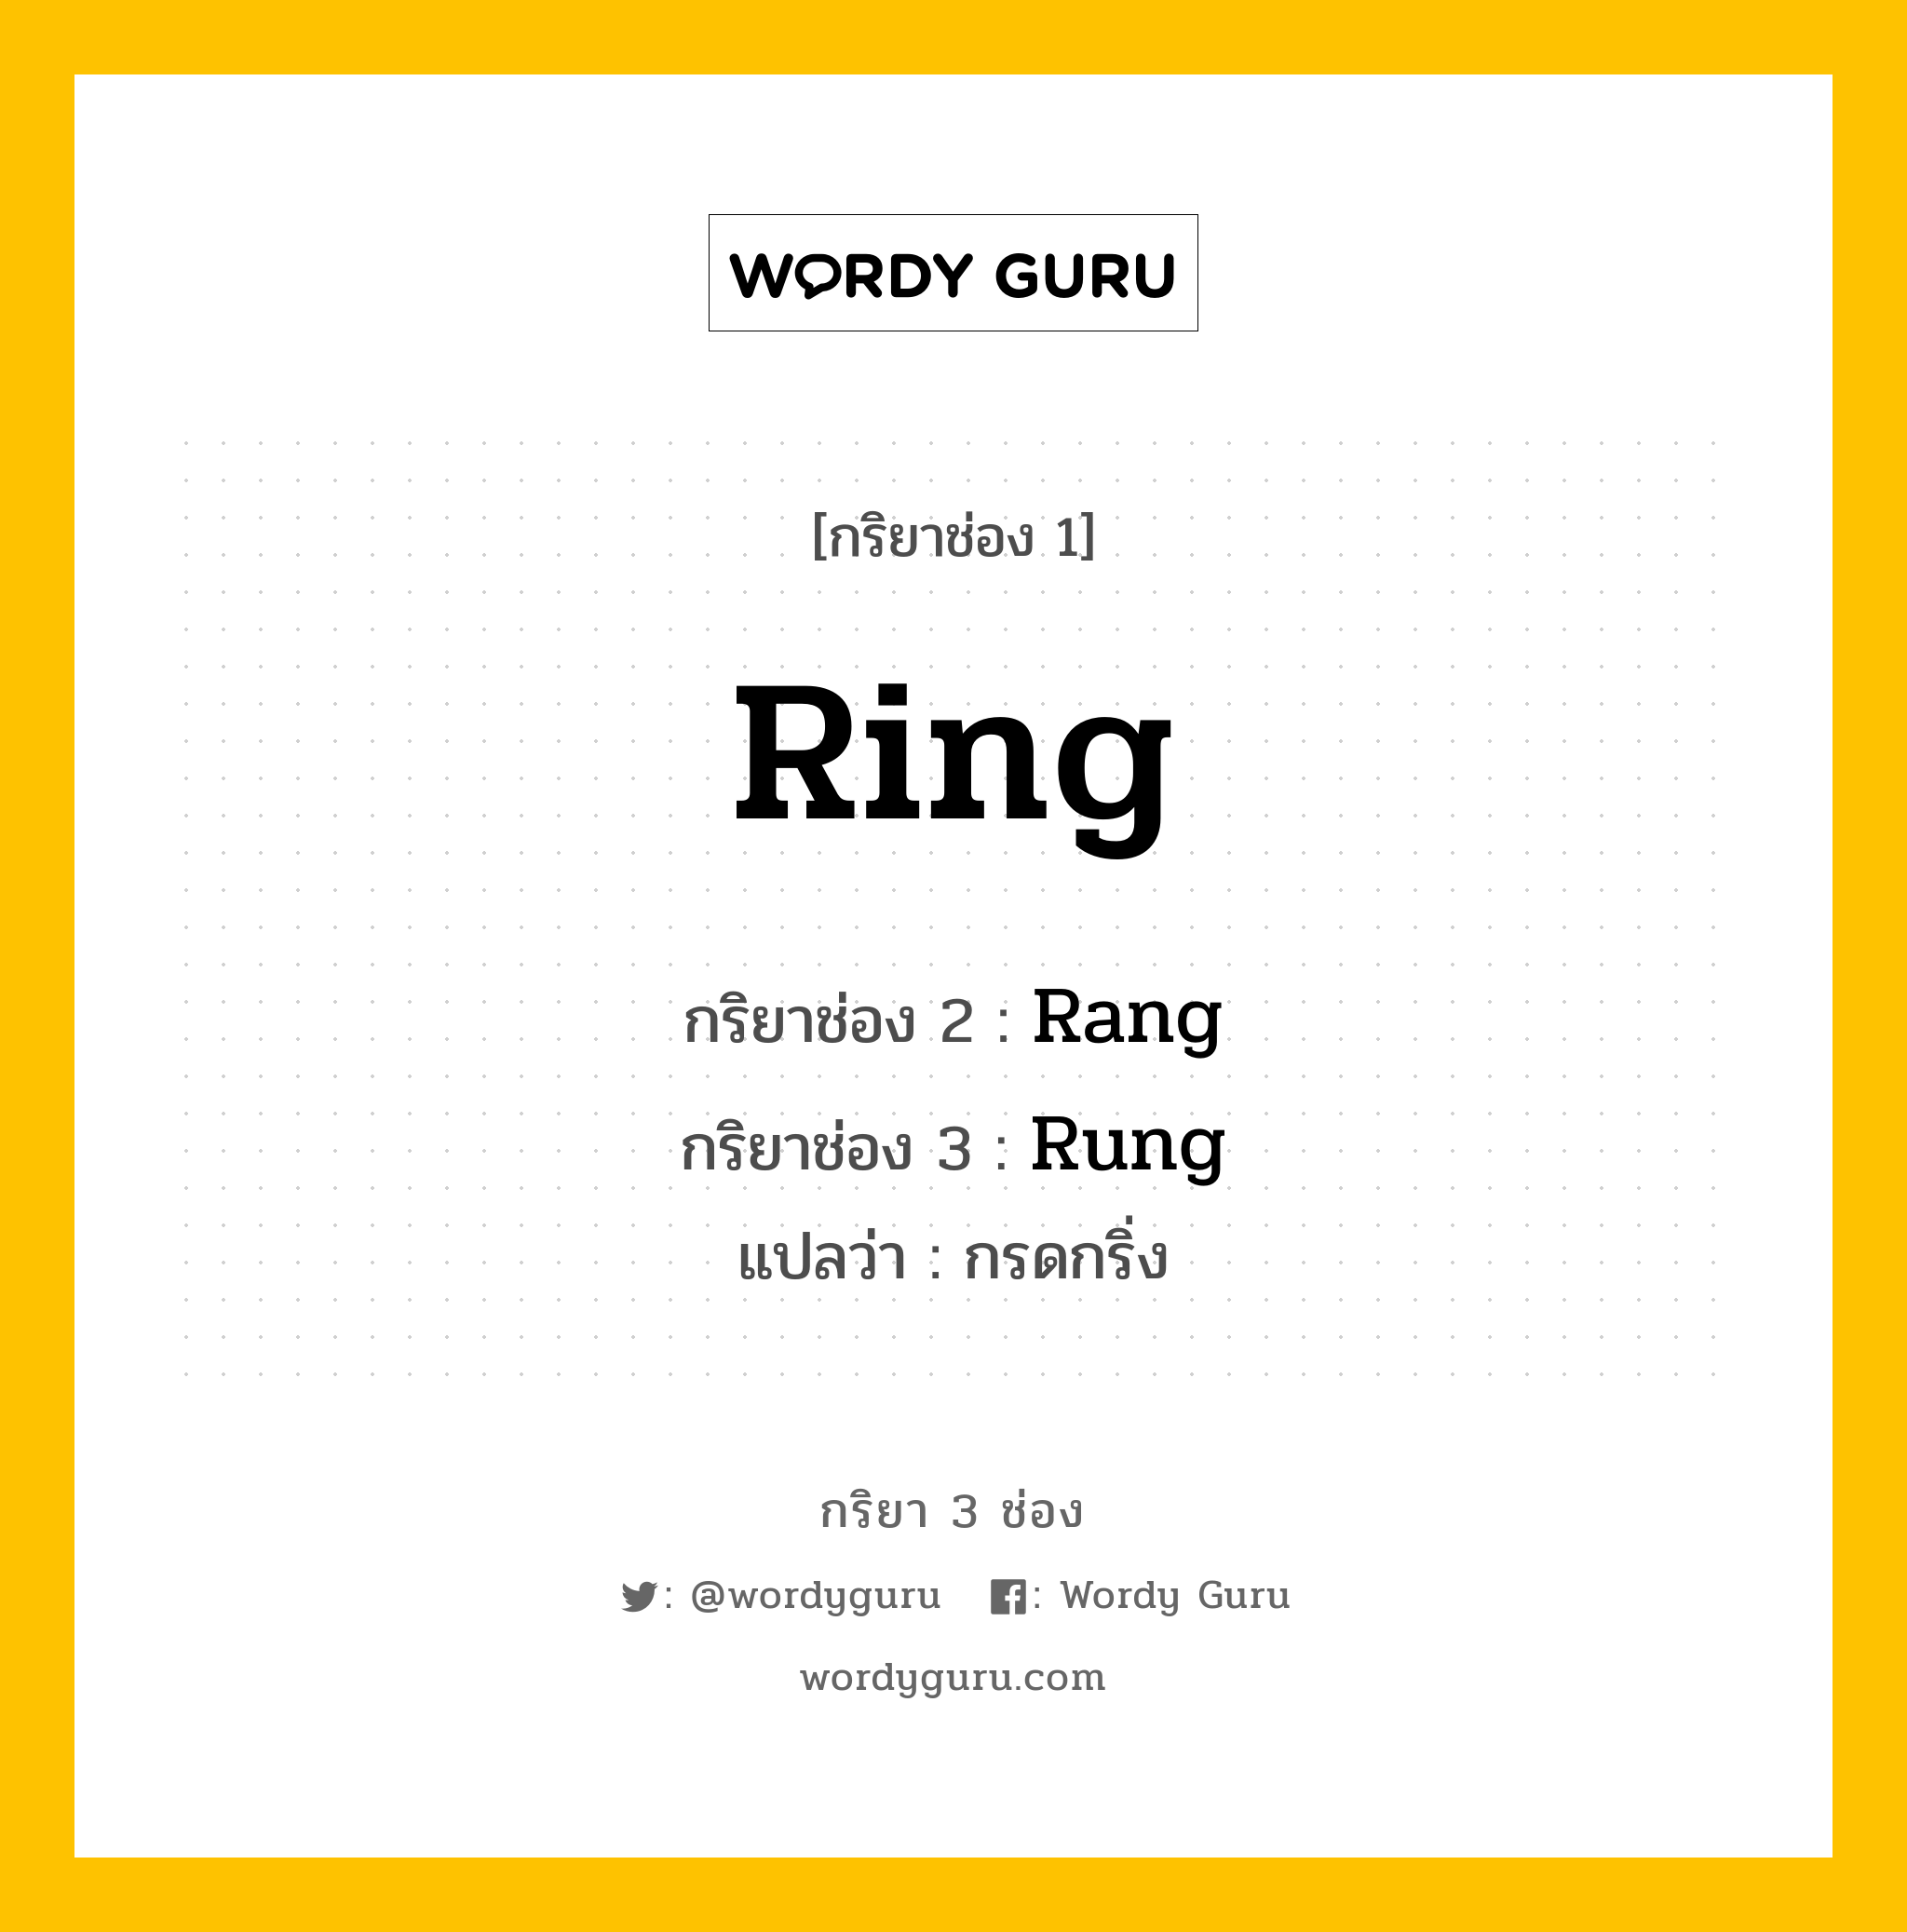 กริยา 3 ช่อง: Ring ช่อง 2 Ring ช่อง 3 คืออะไร, กริยาช่อง 1 Ring กริยาช่อง 2 Rang กริยาช่อง 3 Rung แปลว่า กรดกริ่ง หมวด Irregular Verb